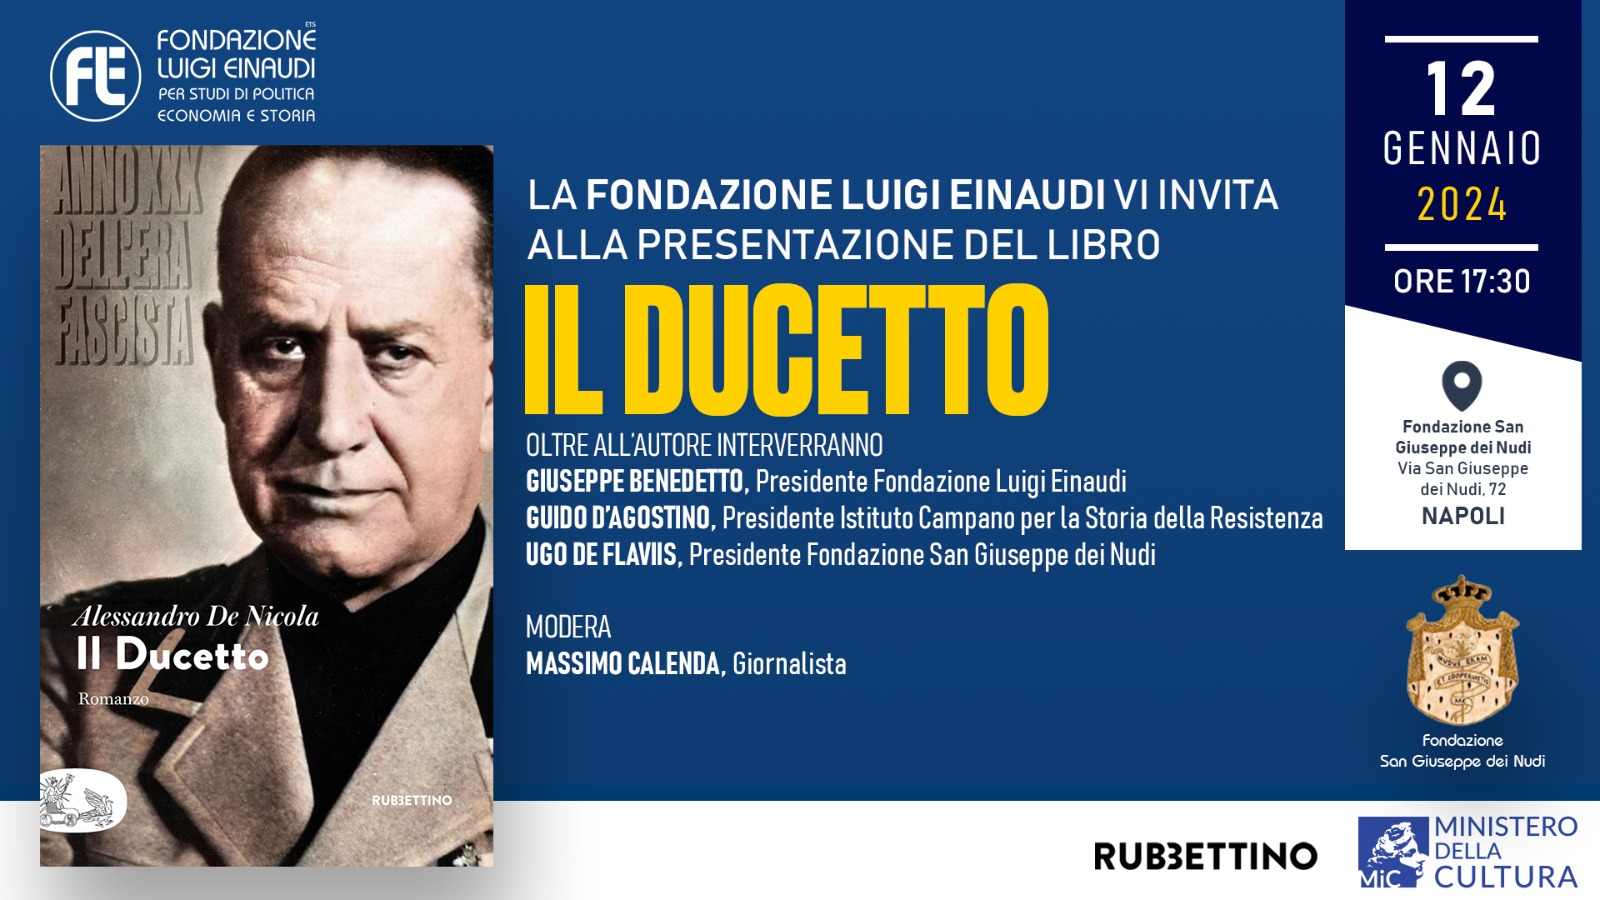 Presentazione del libro “Il Ducetto” di Alessandro De Nicola a Napoli